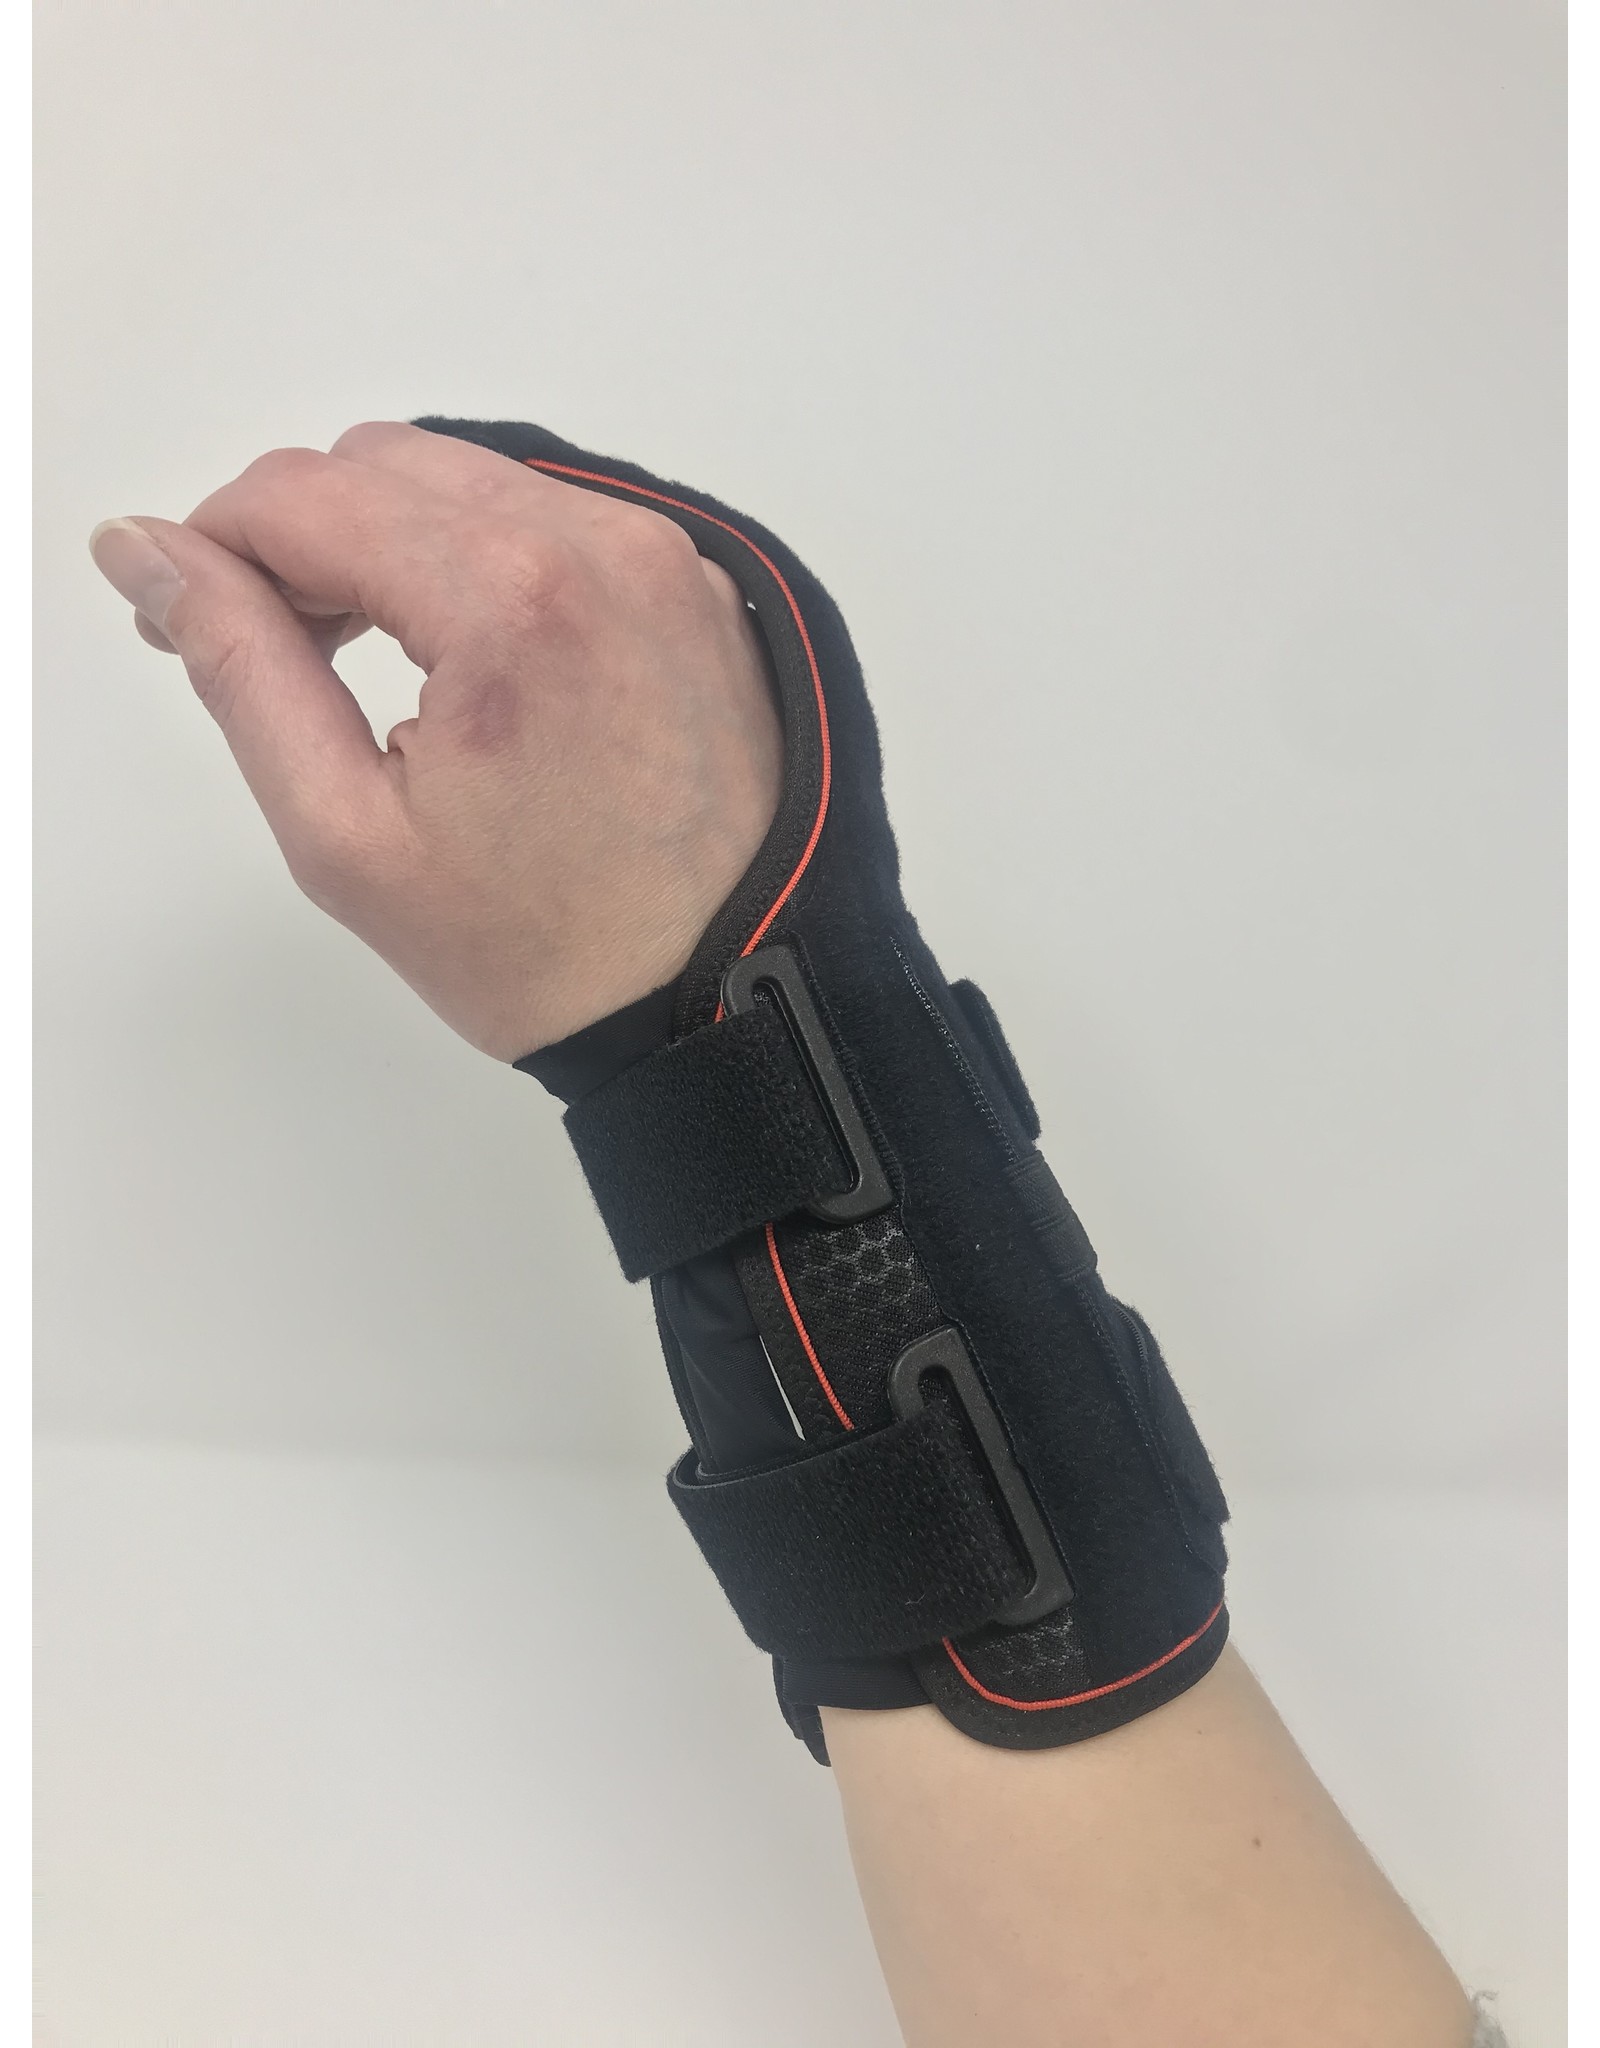 Orliman Manutec Semi-Rigid Wrist Support